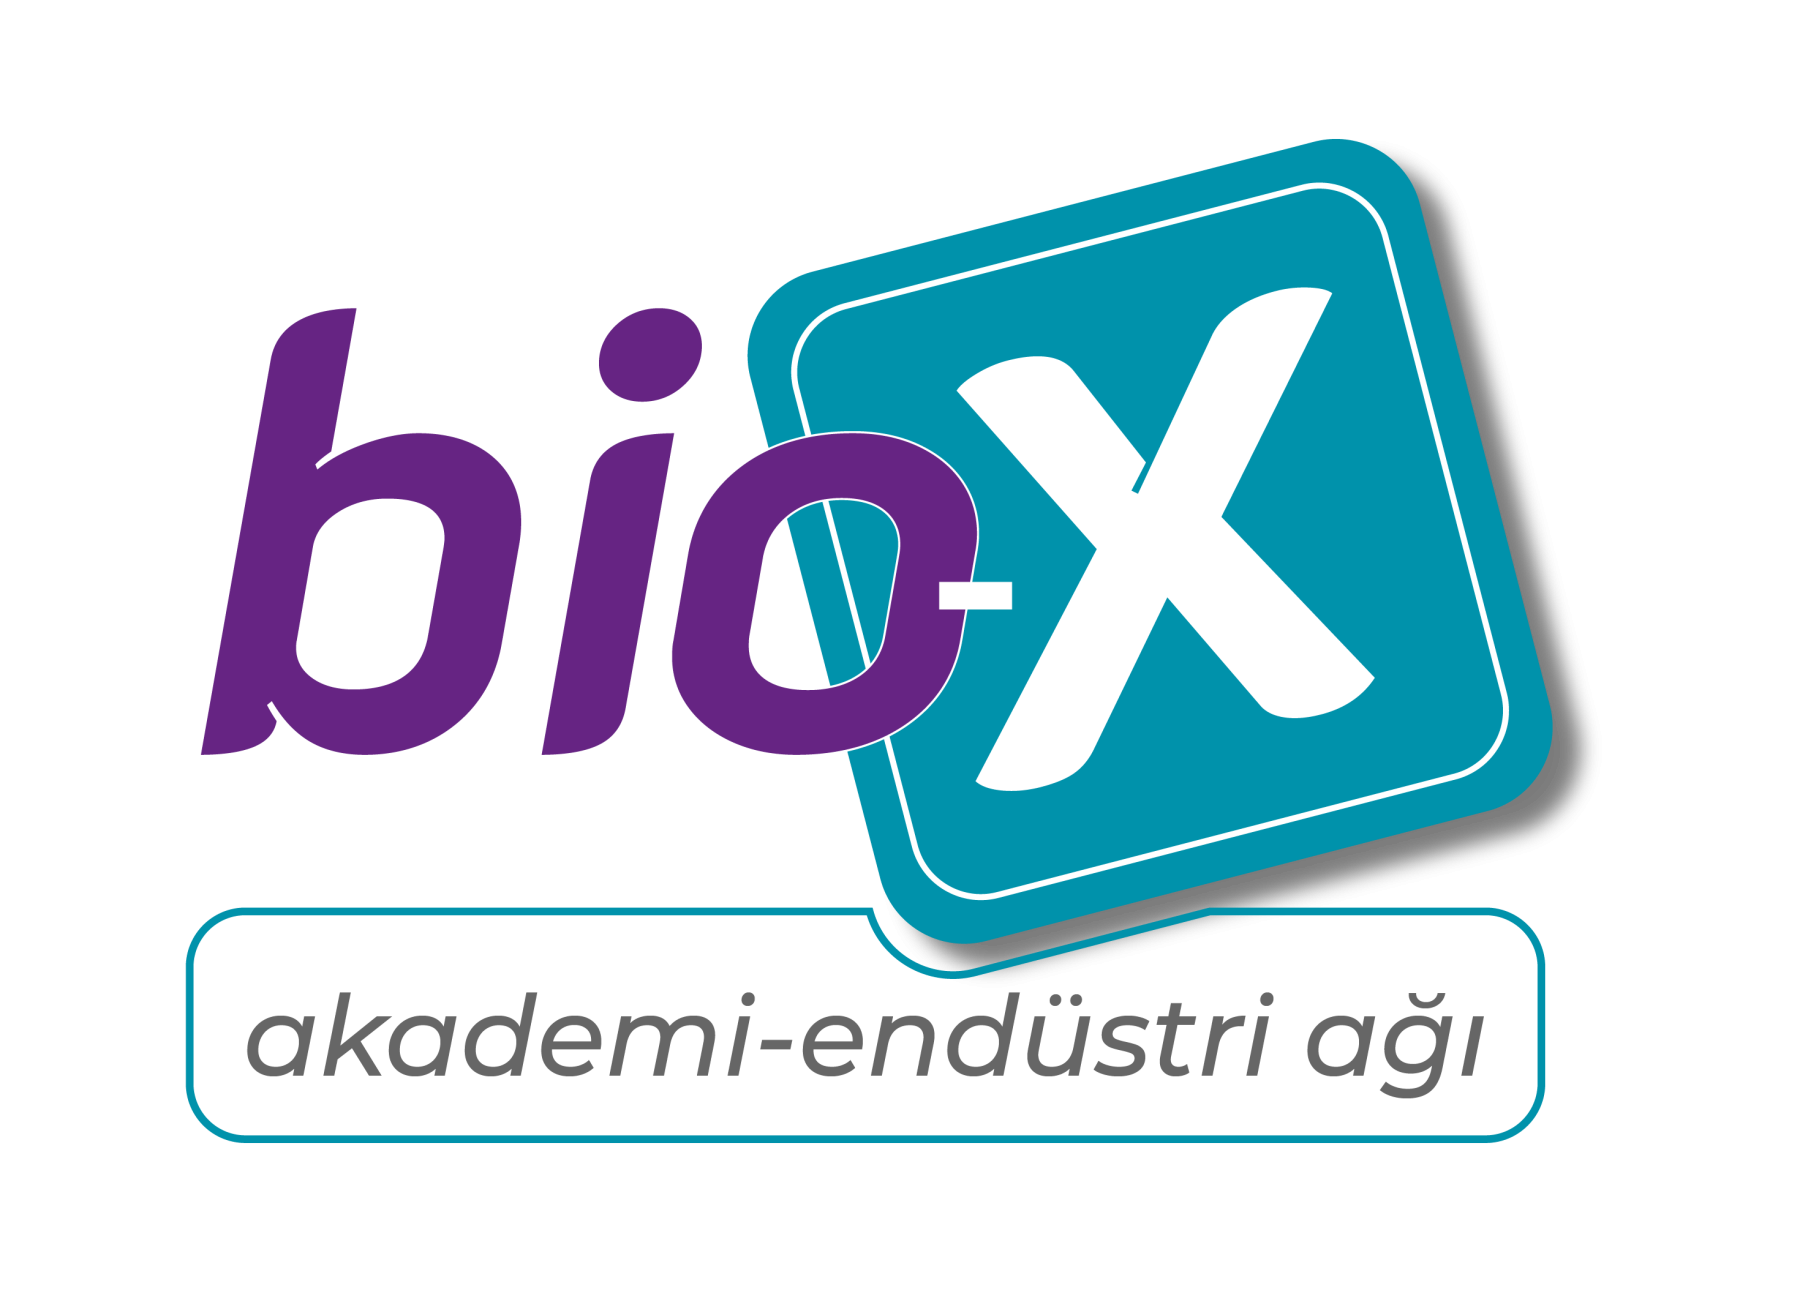 bio-x_LOGO_1_1-01